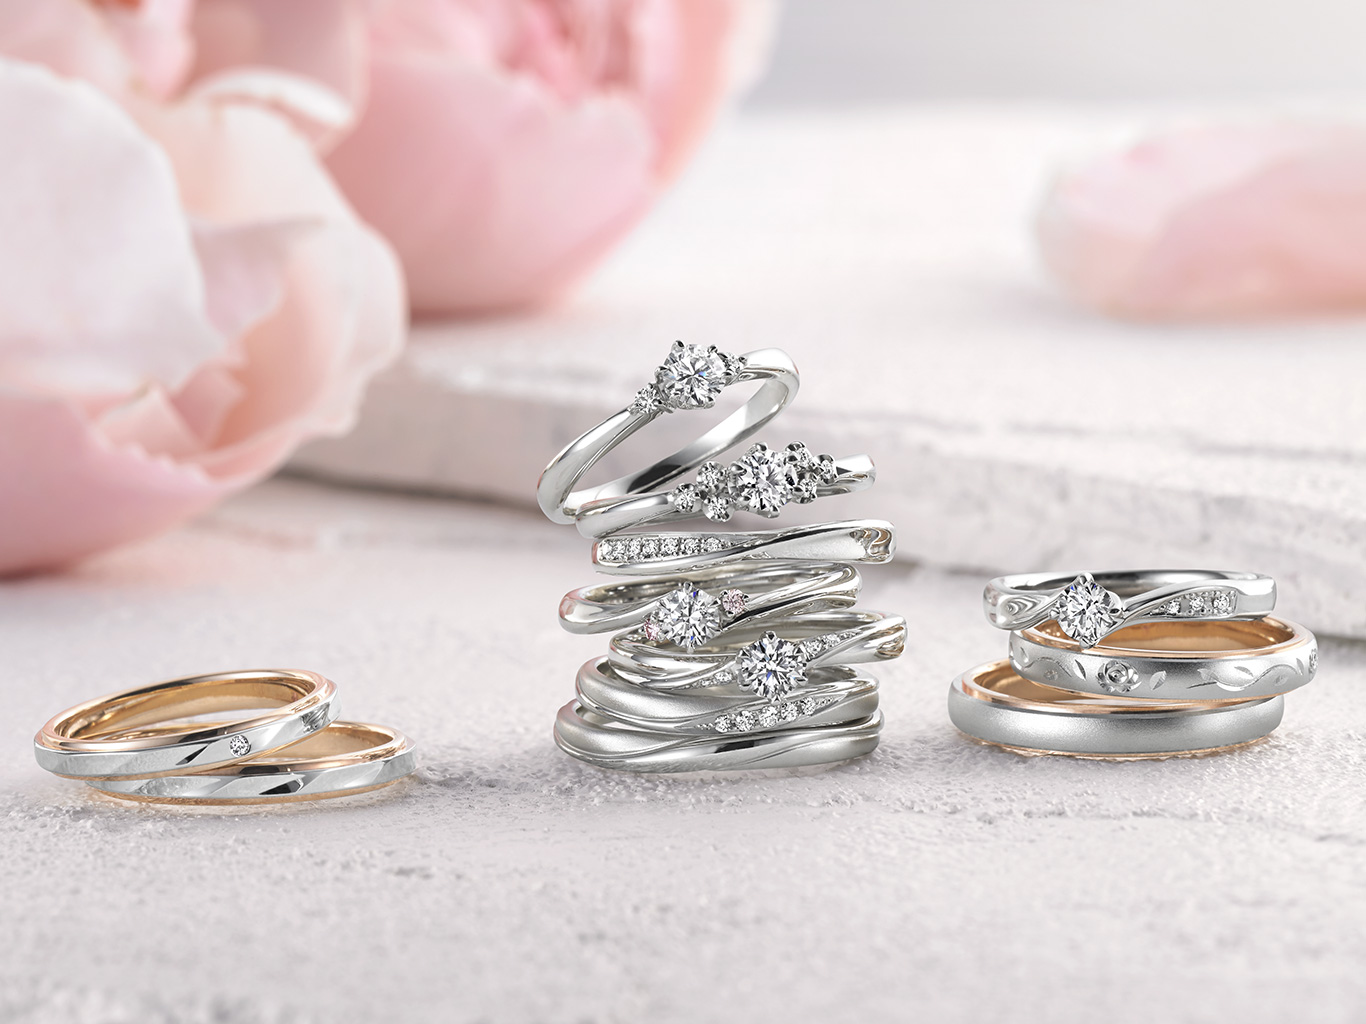 人気ドラマ衣装協力ブランド プチマリエが可愛い 仙台 山形 結婚指輪 婚約指輪 ウェディ Wedy 公式ブランドサイト